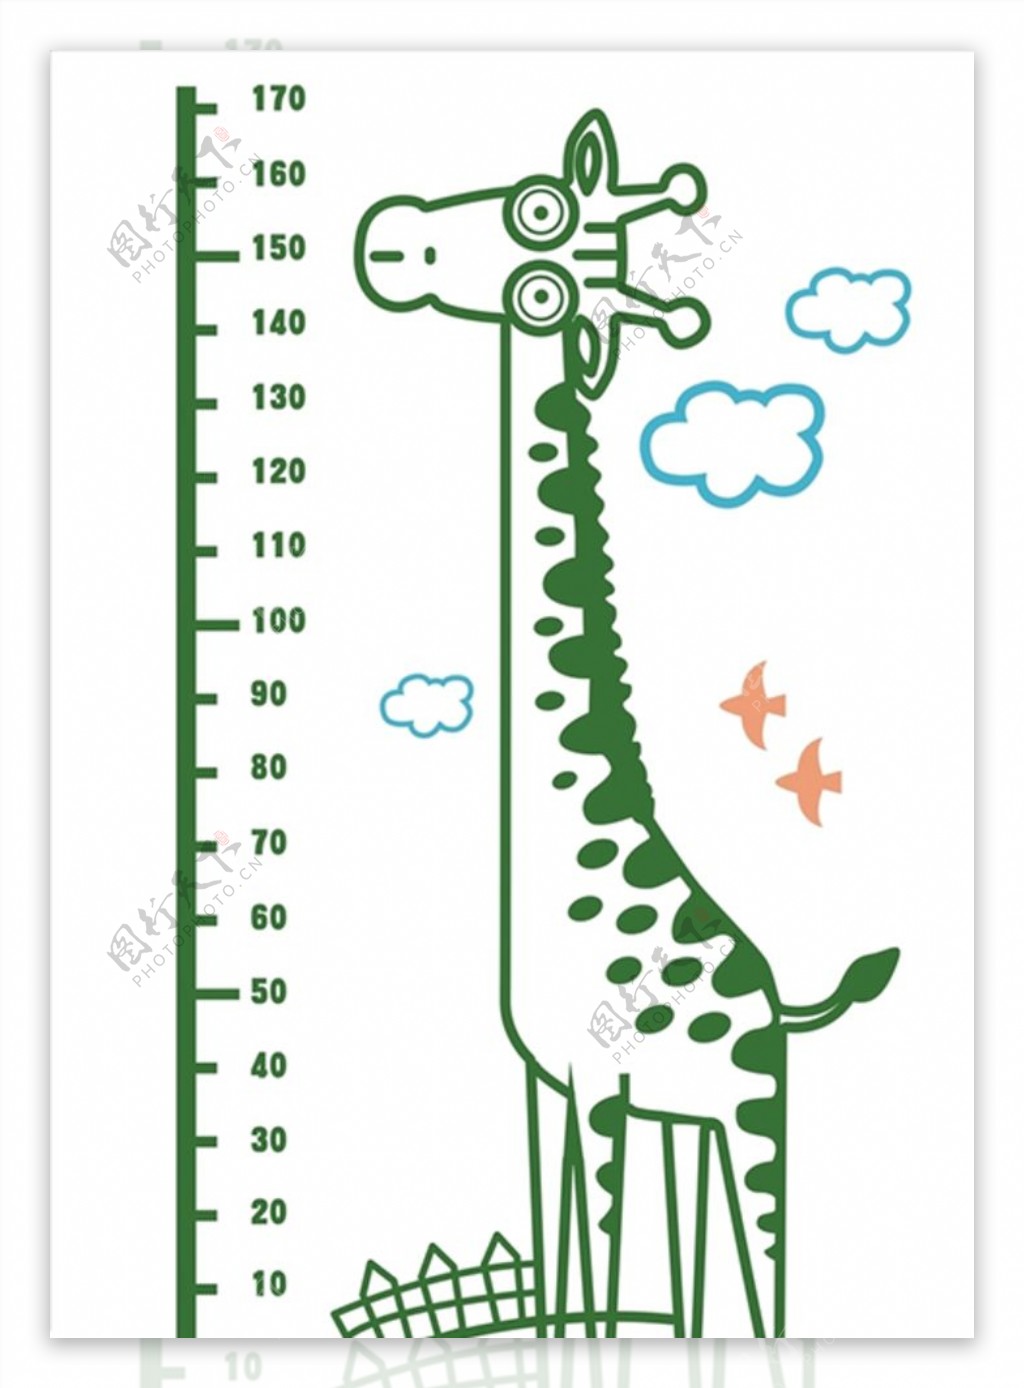 长颈鹿身高矢量图